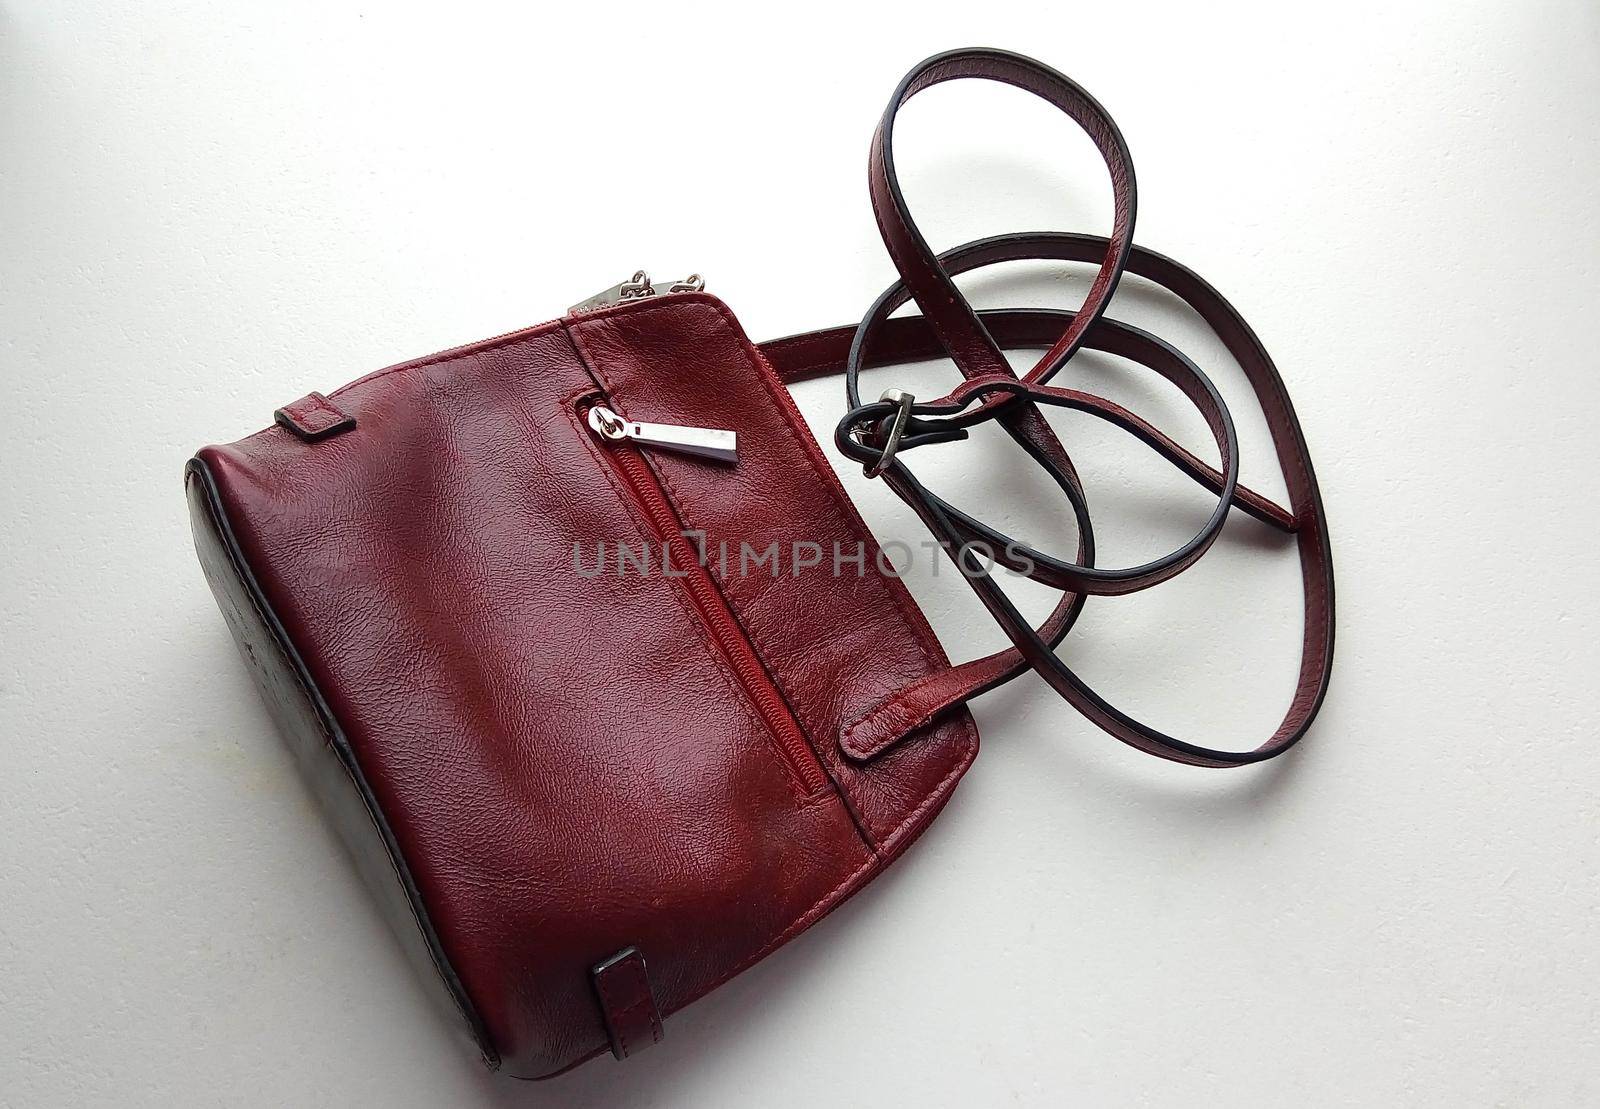 Leather handbag on white background.bag accessory case by lapushka62